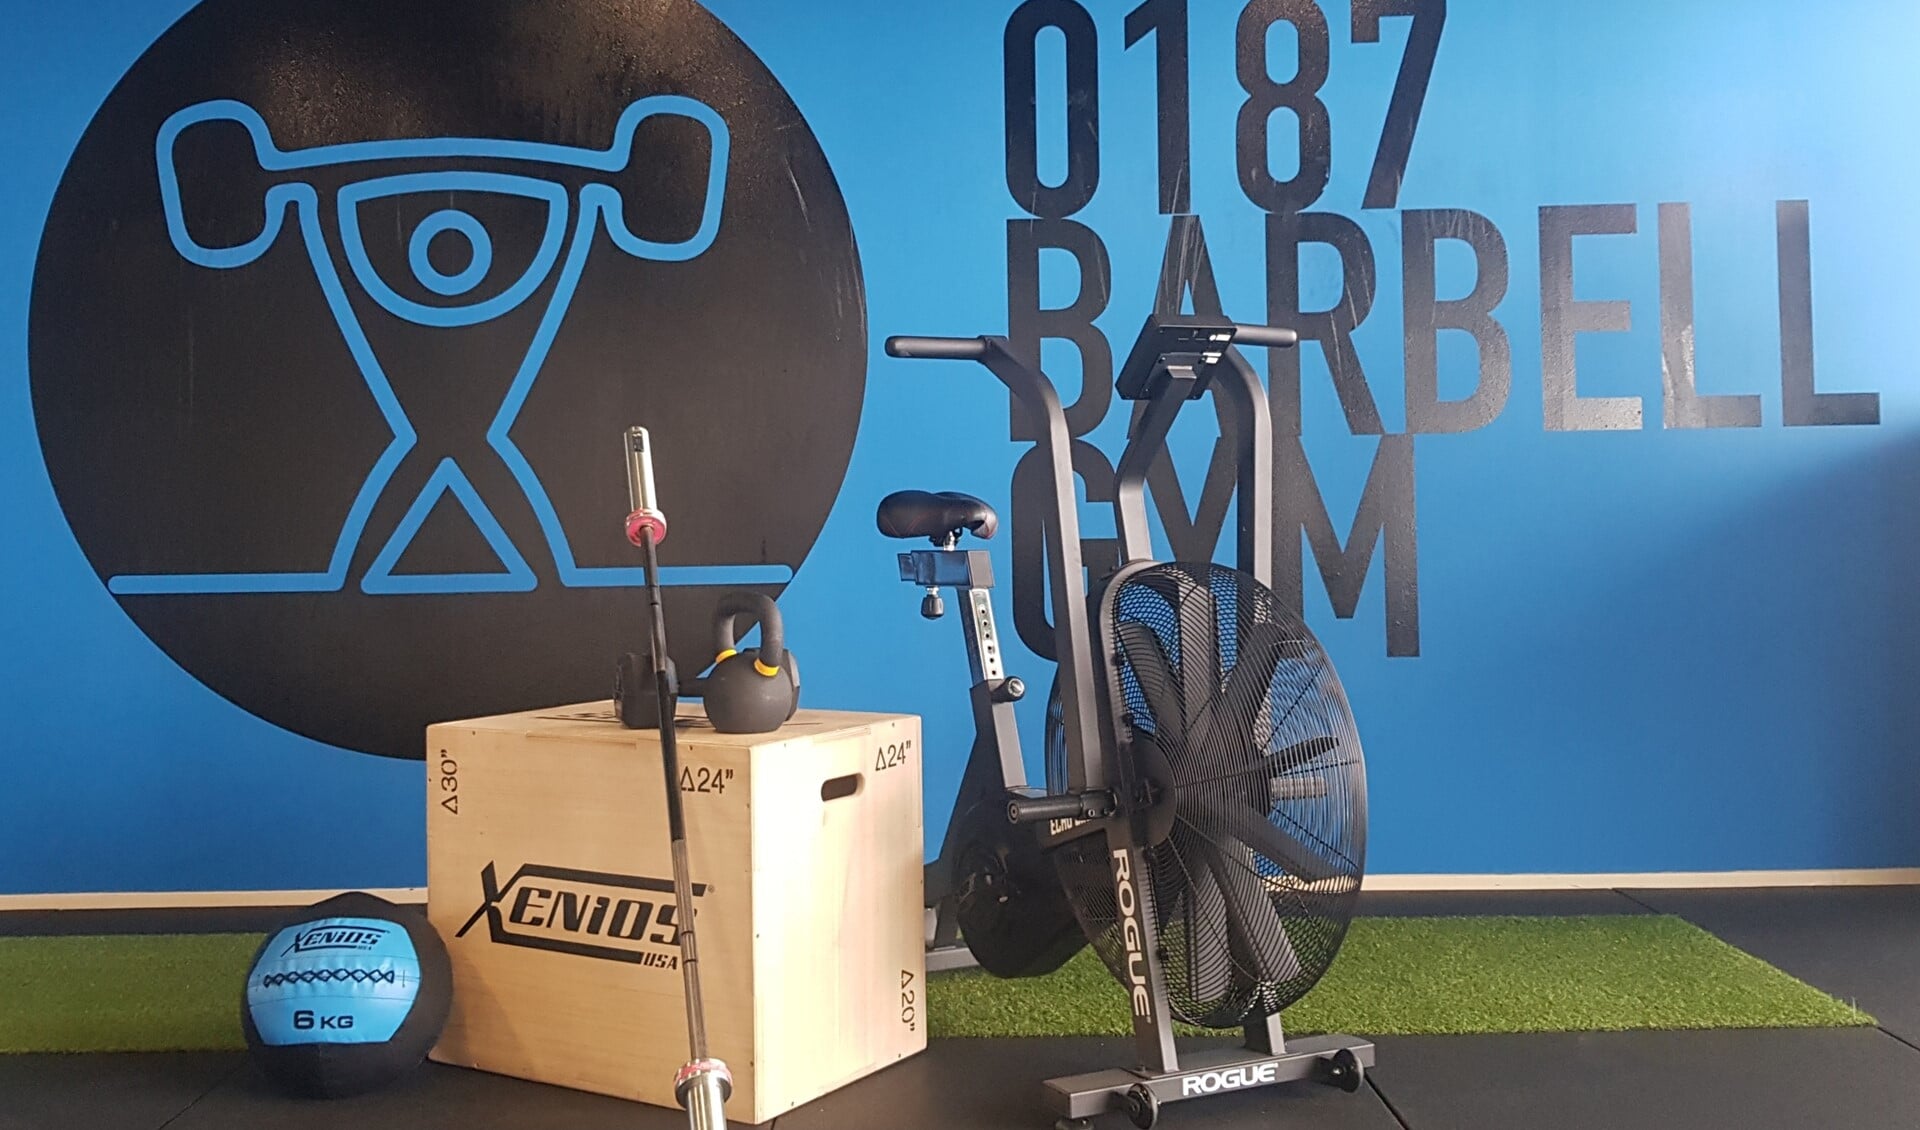 0187 Barbell Gym is de enige officiële CrossFit gym op het eiland en in het item zal er dieper ingegaan worden op de gezondheidsvoordelen.